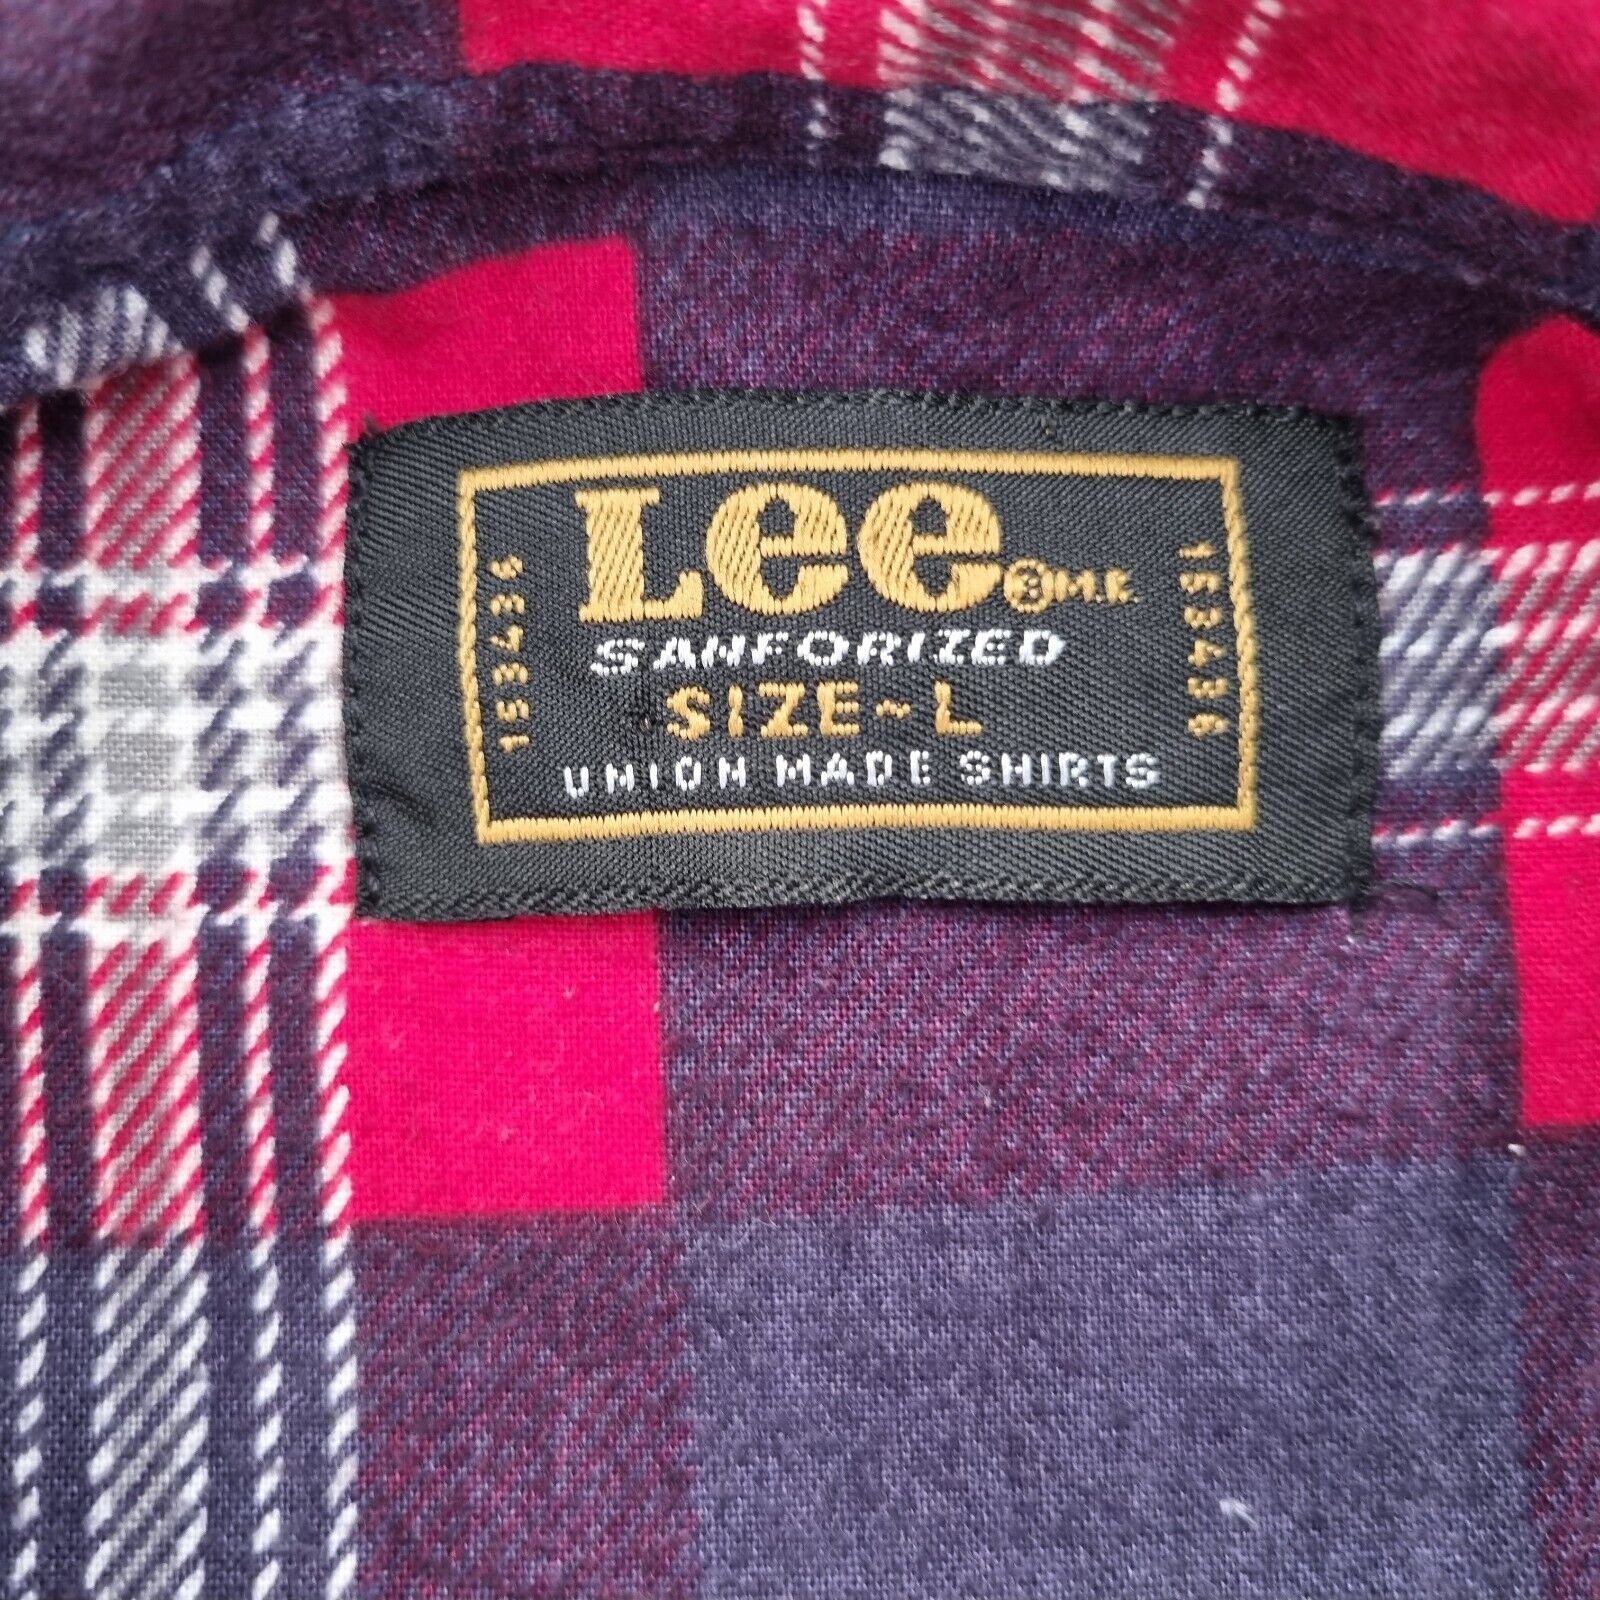 Mens Vintage Lee Sanforized Cotton Long Sleeve Shirt - Bonnie Lassio